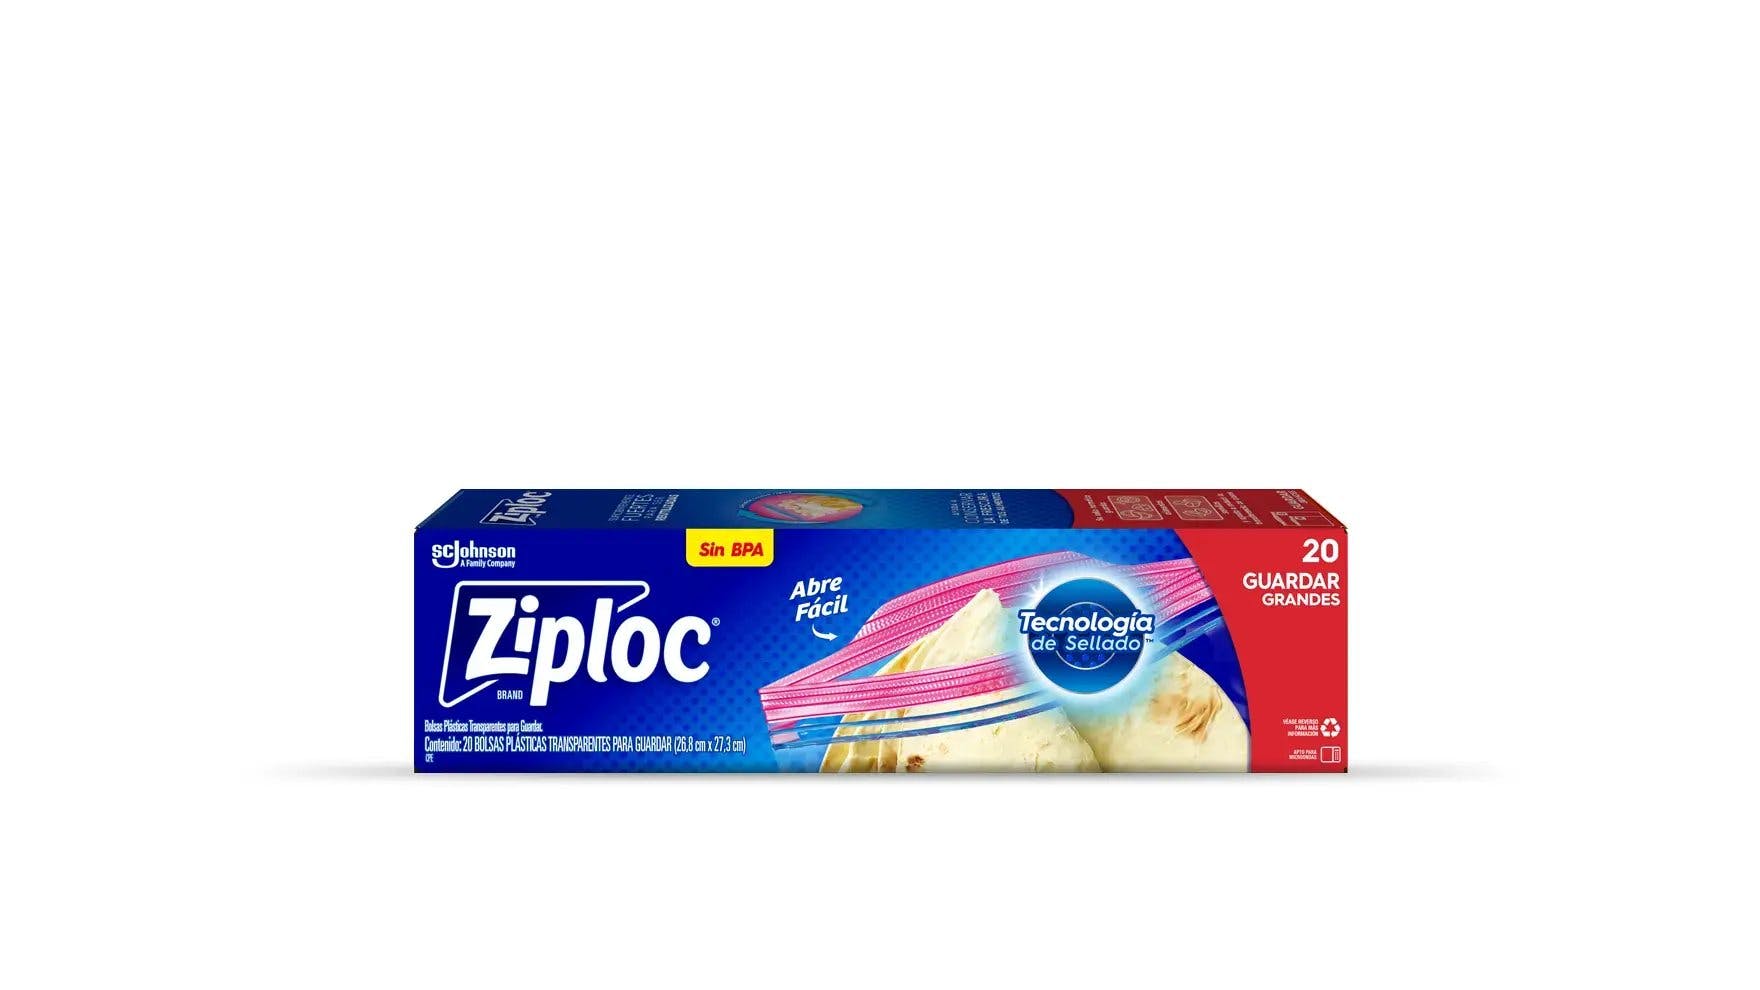 Frente de la bolsa Ziploc® para conservar de cuatro litros.